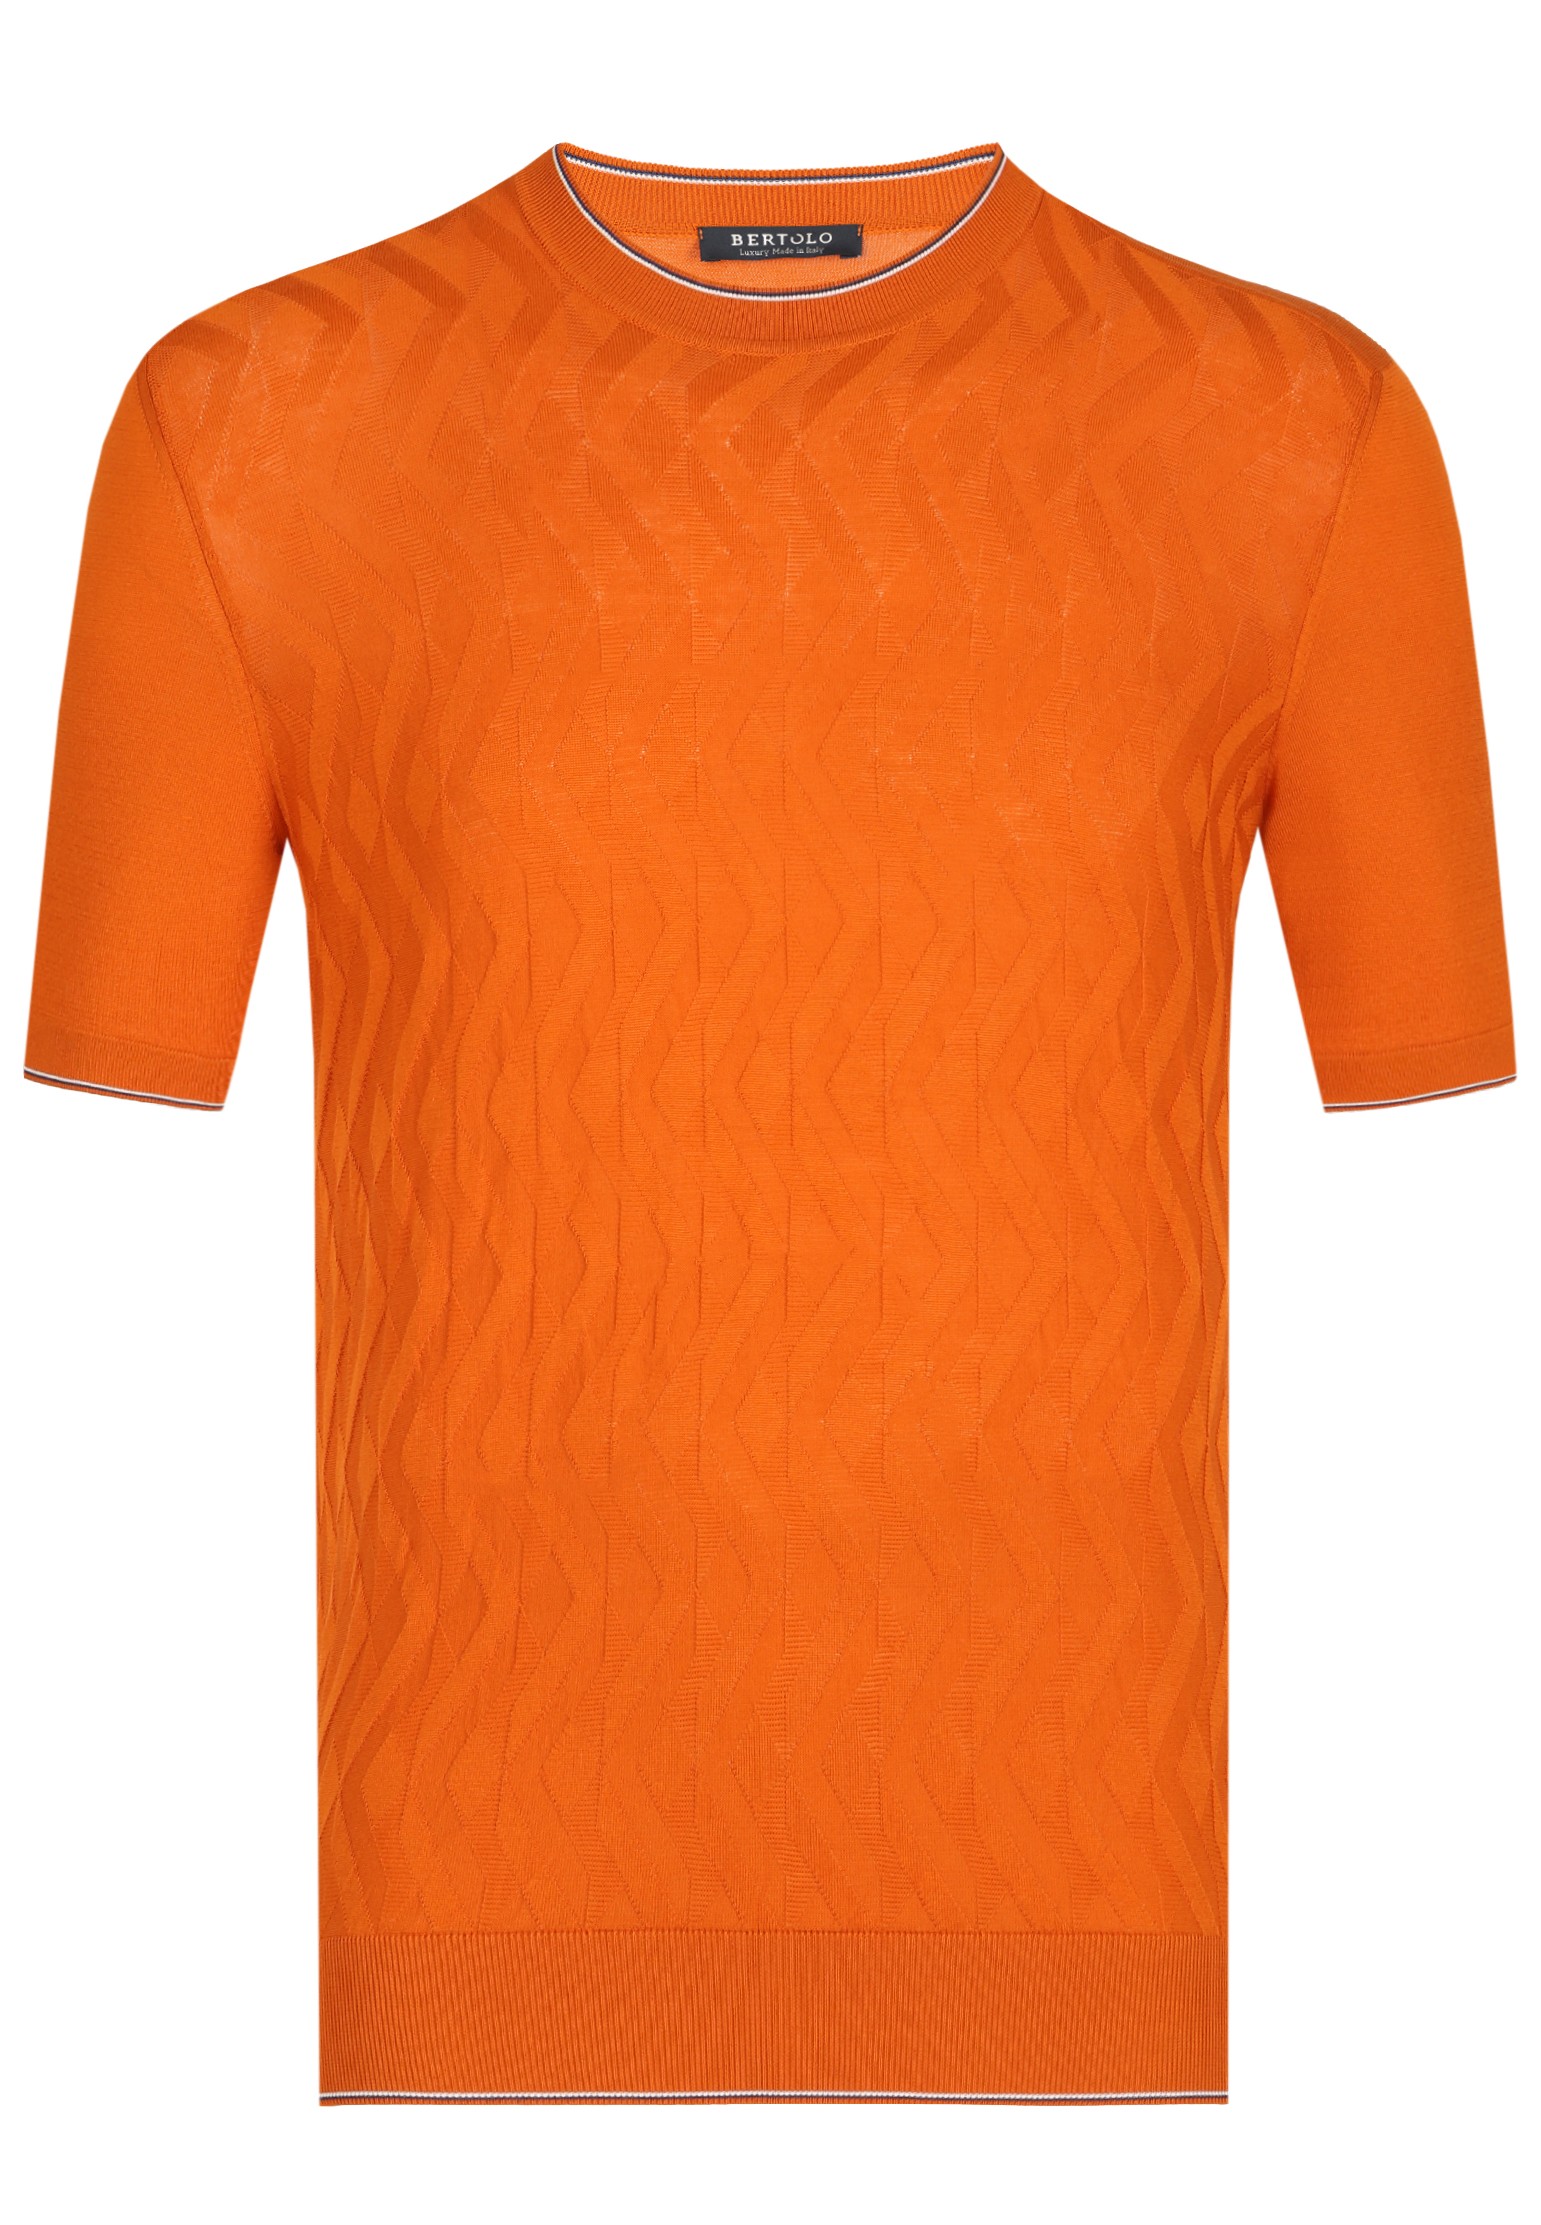 мужская футболка bertolo, оранжевая